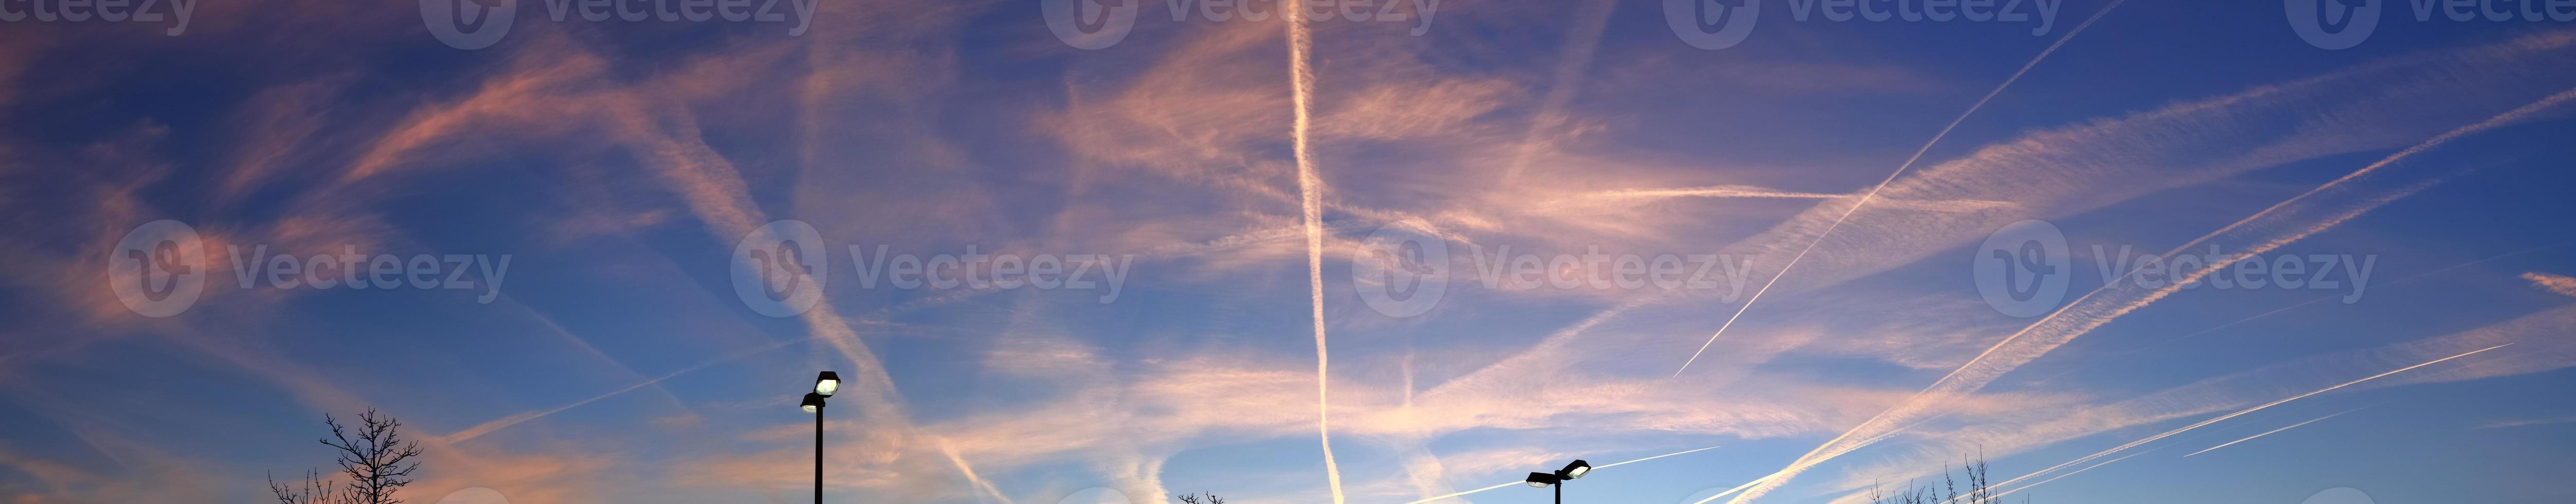 Flugzeug-Kondensstreifen am blauen Himmel zwischen einigen Wolken foto